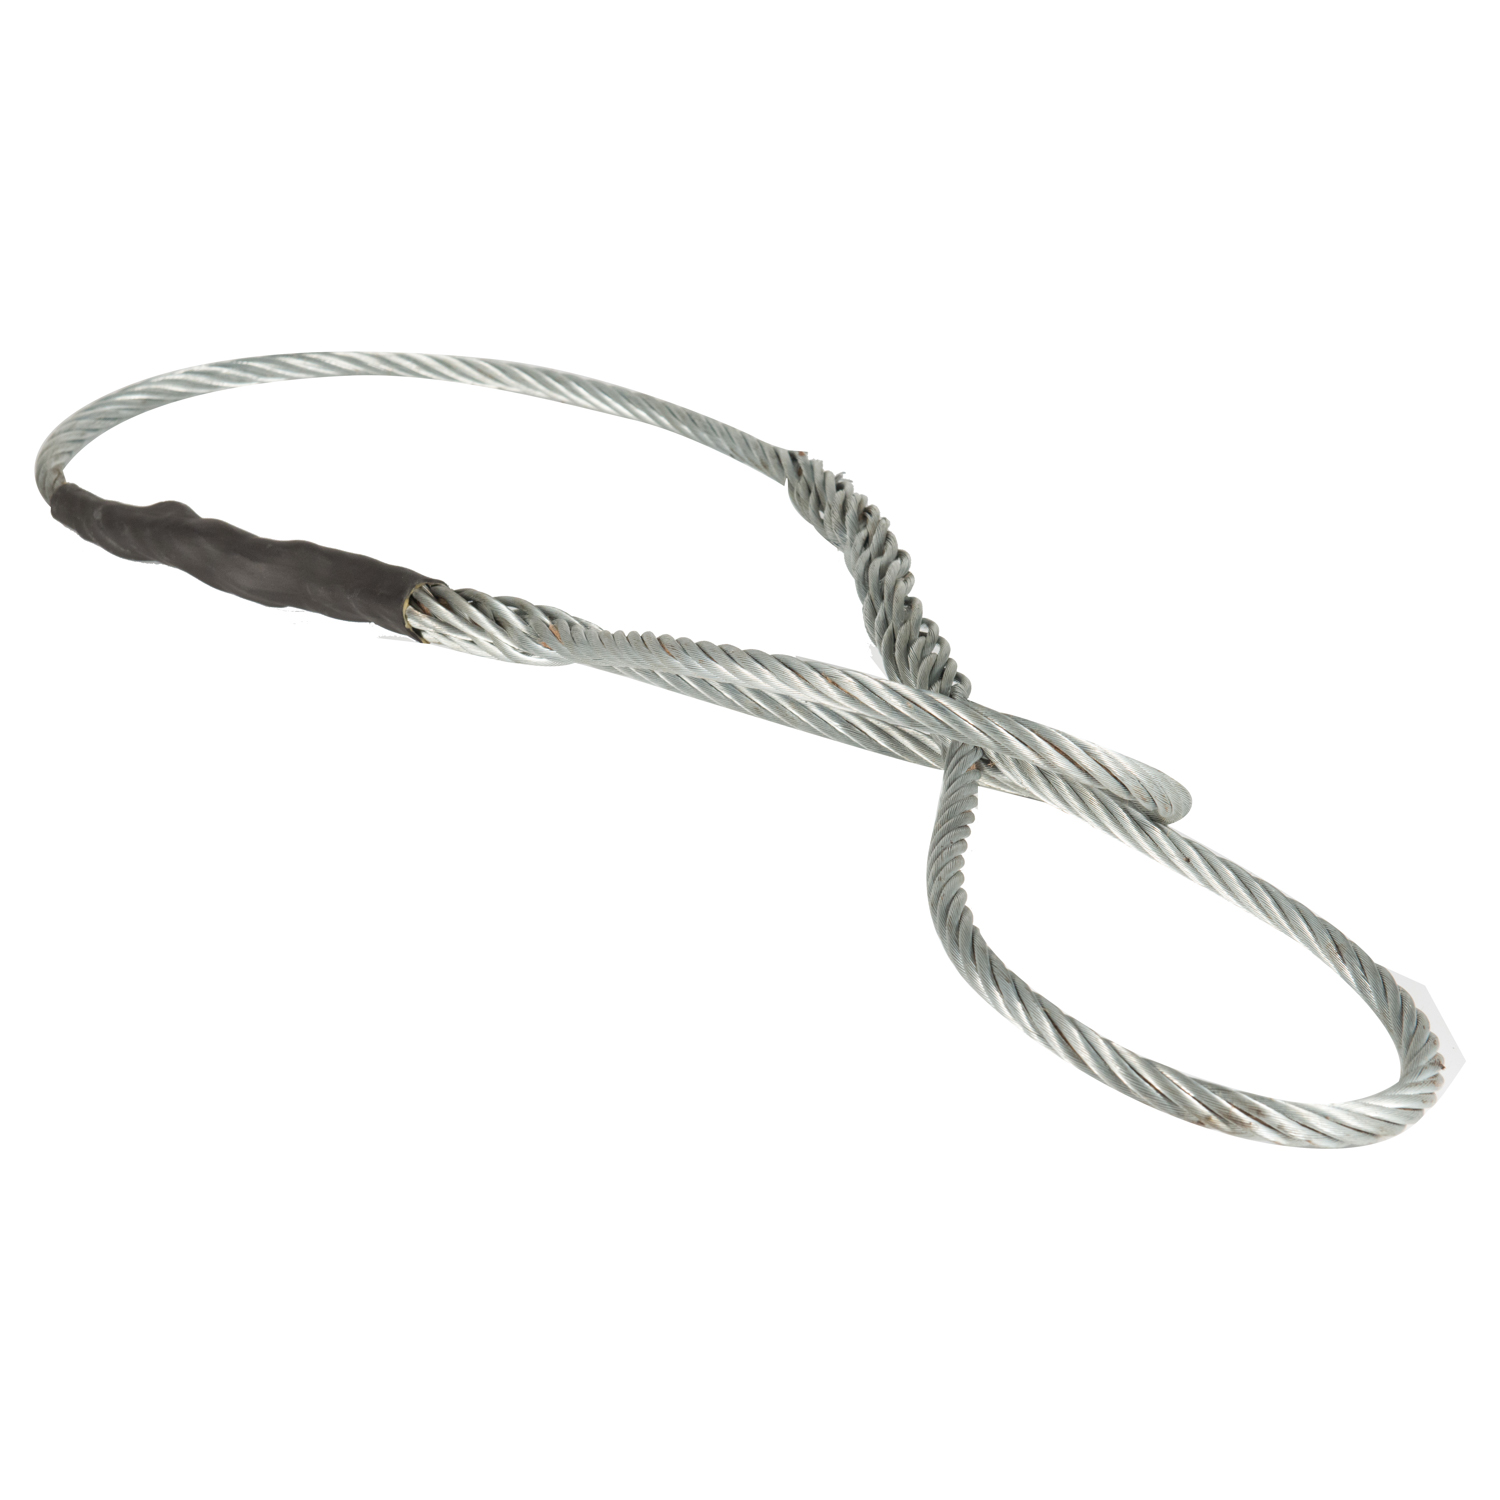 插编钢丝绳索具(PT0203)